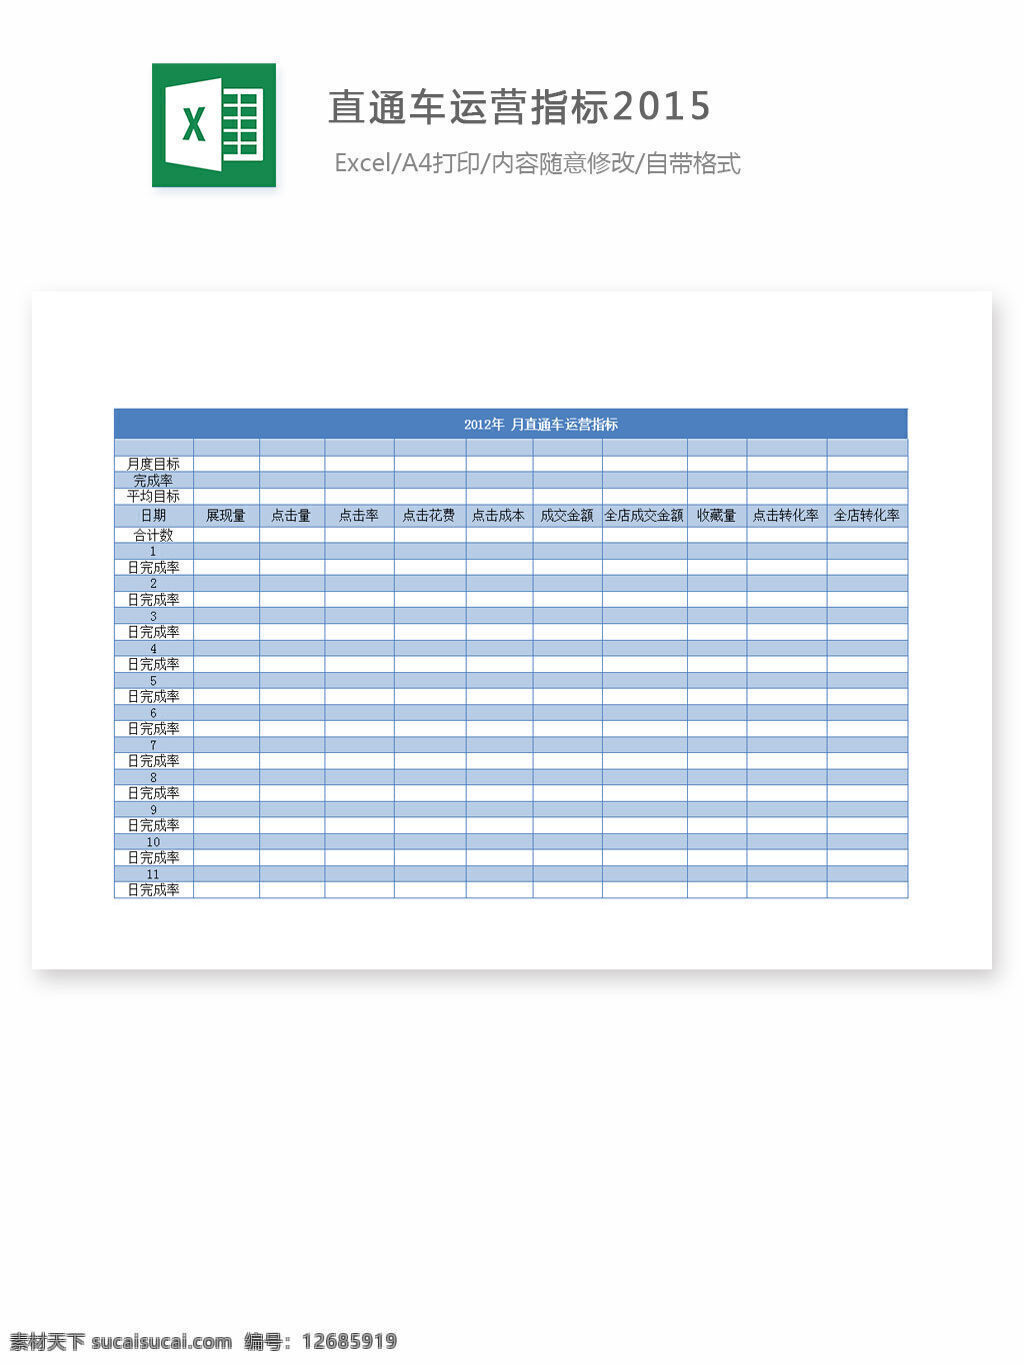 直通车 运营 指标 2015 excel 表格 表格模板 表格设计 图表